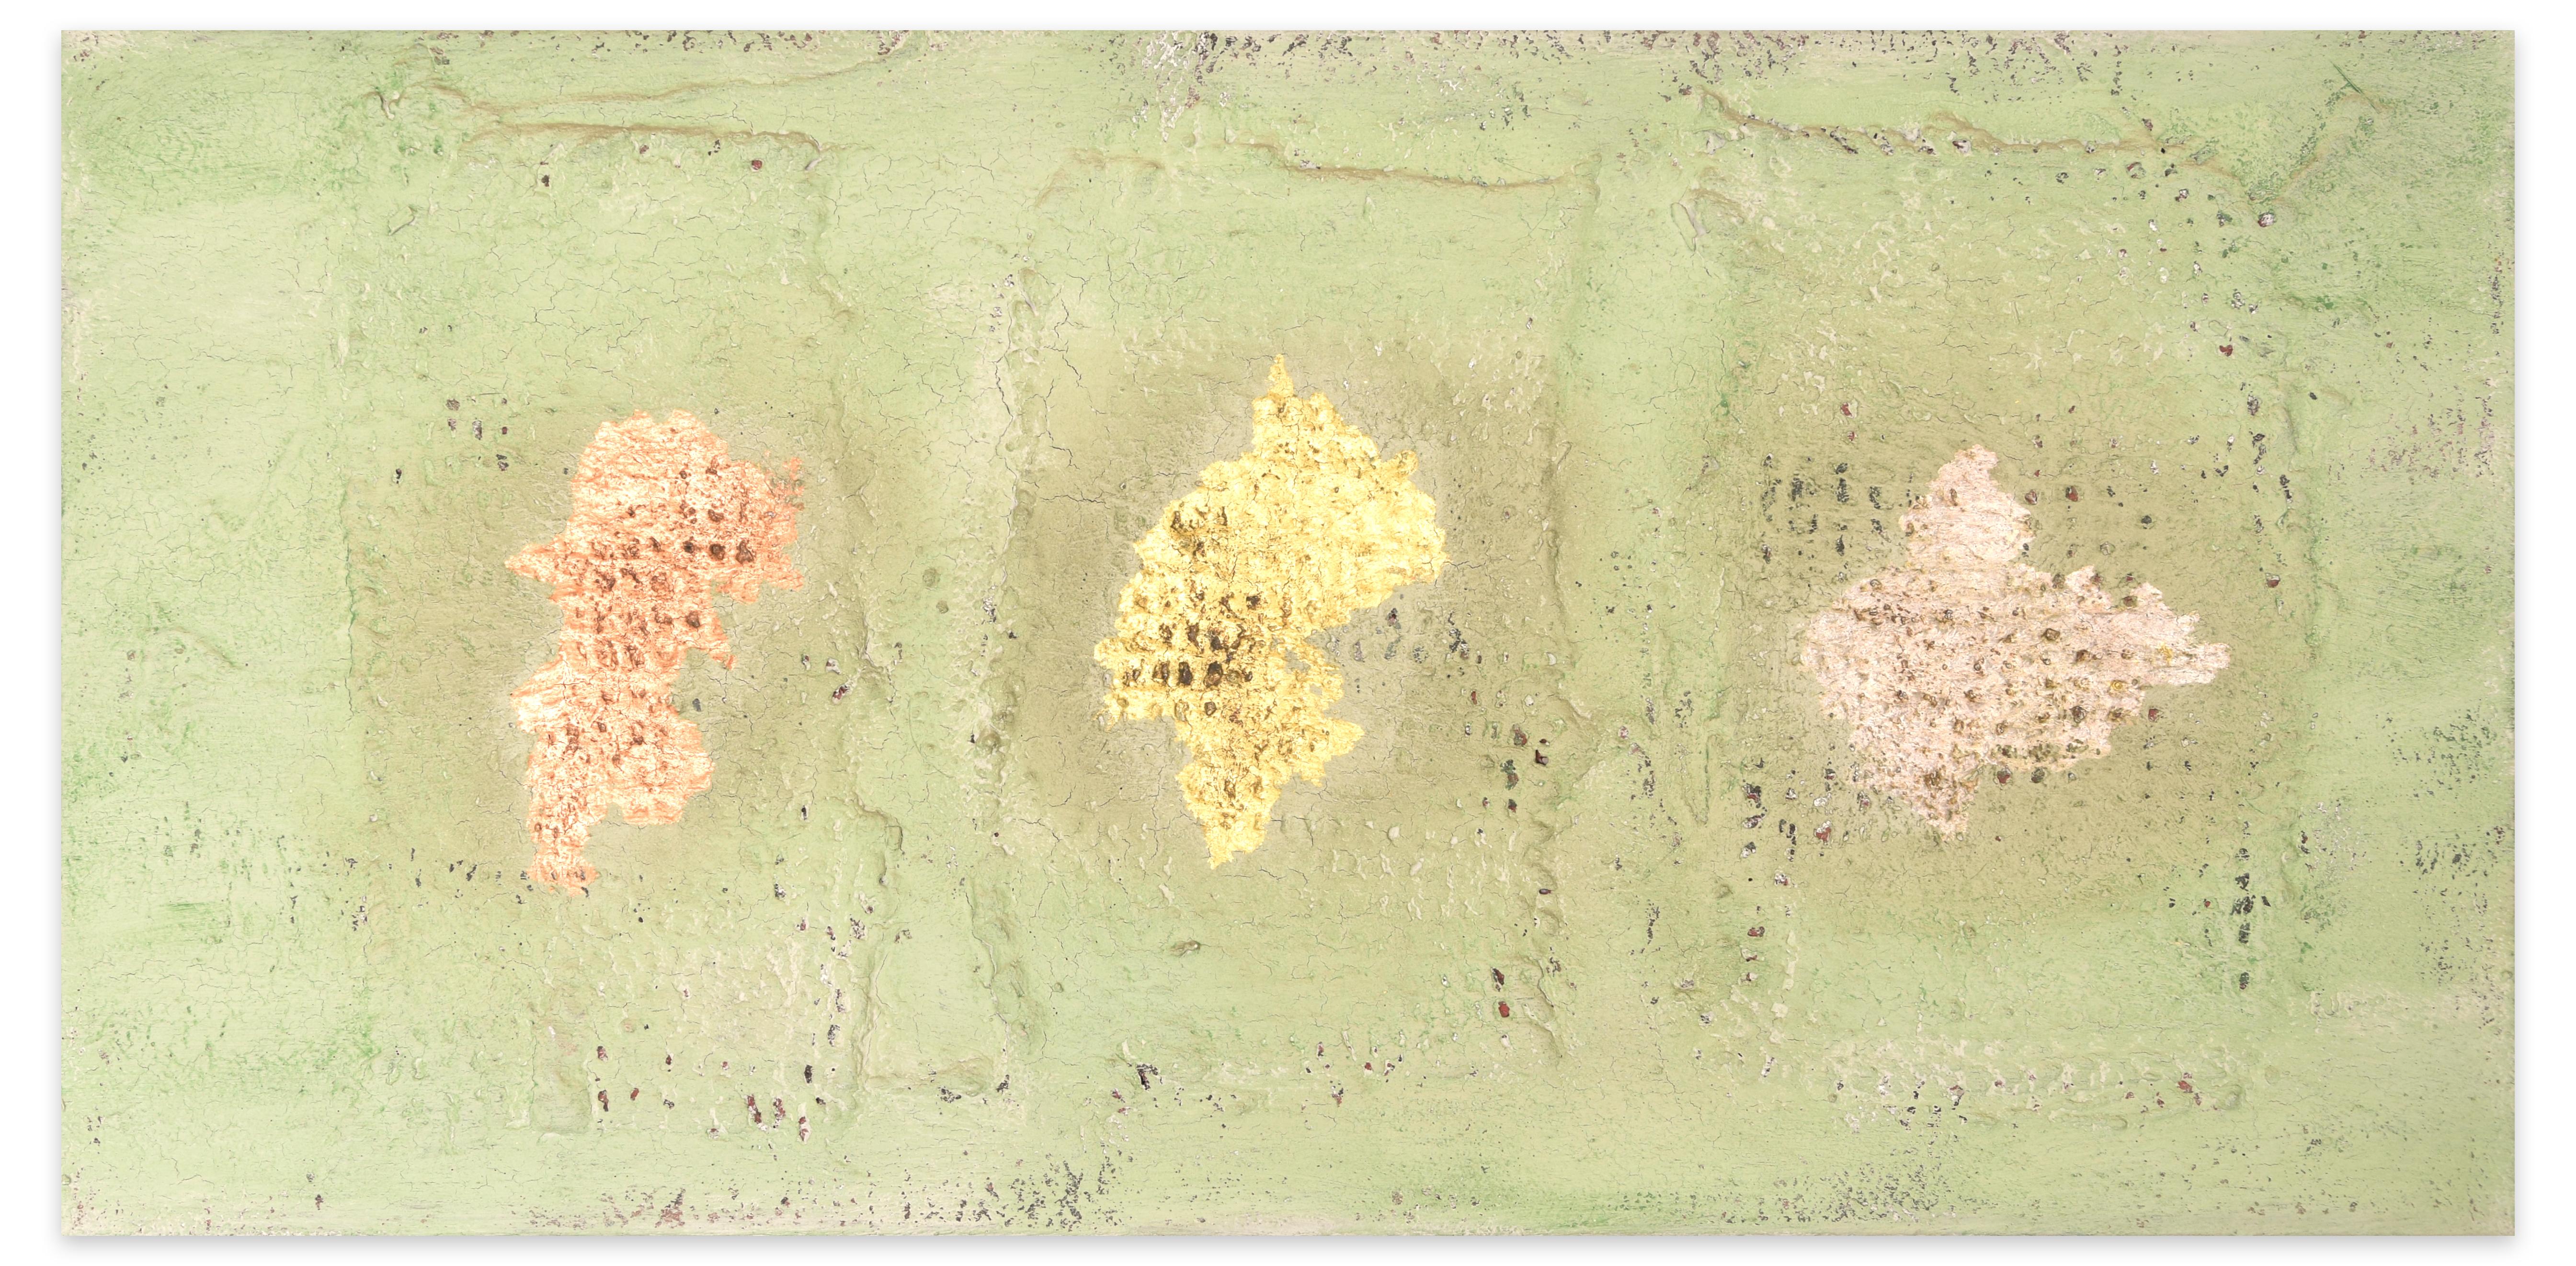 Three Gifts ist ein wunderschönes Gemälde in Öl und Mischtechnik auf Leinwand, das der italienische Künstler Marco Amici im Jahr 2002 geschaffen hat.

Originaltitel: Tre Doni

Titel und Monogramme sind vom Künstler in schwarzem Öl auf die Rückseite